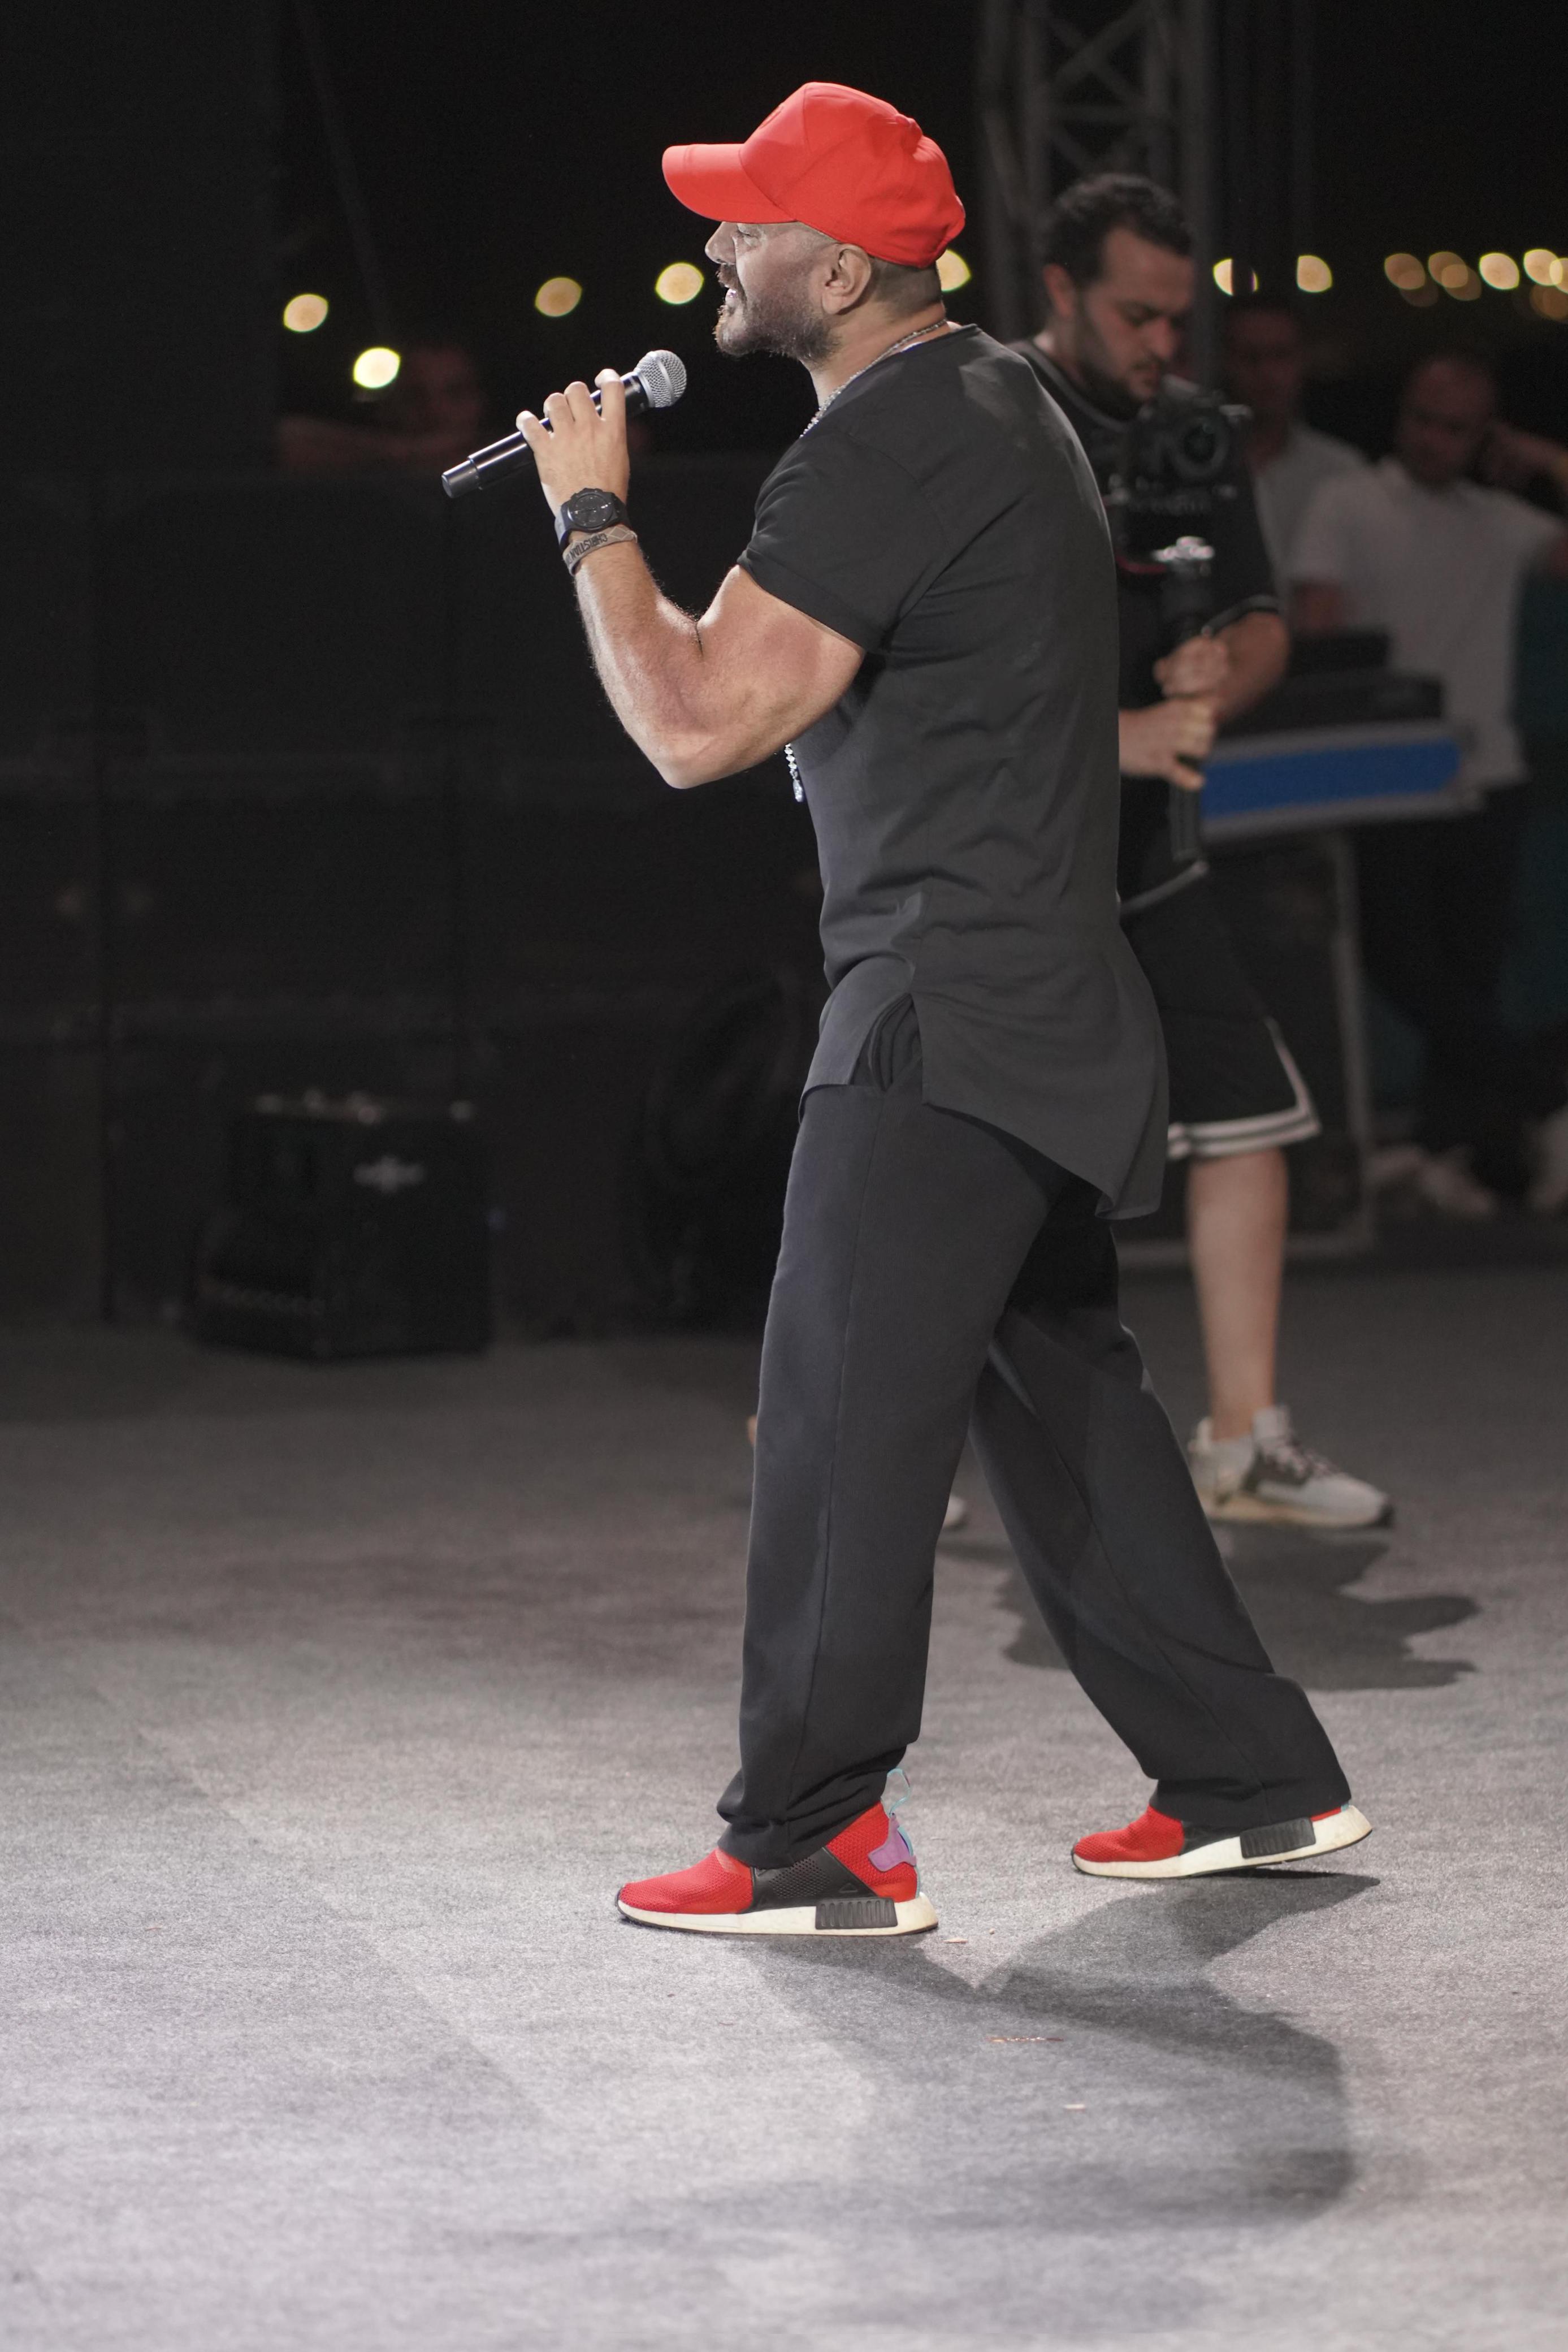 تامر حسني يفاجئ جمهوره بعروض استثنائية في حفله بالتجمع